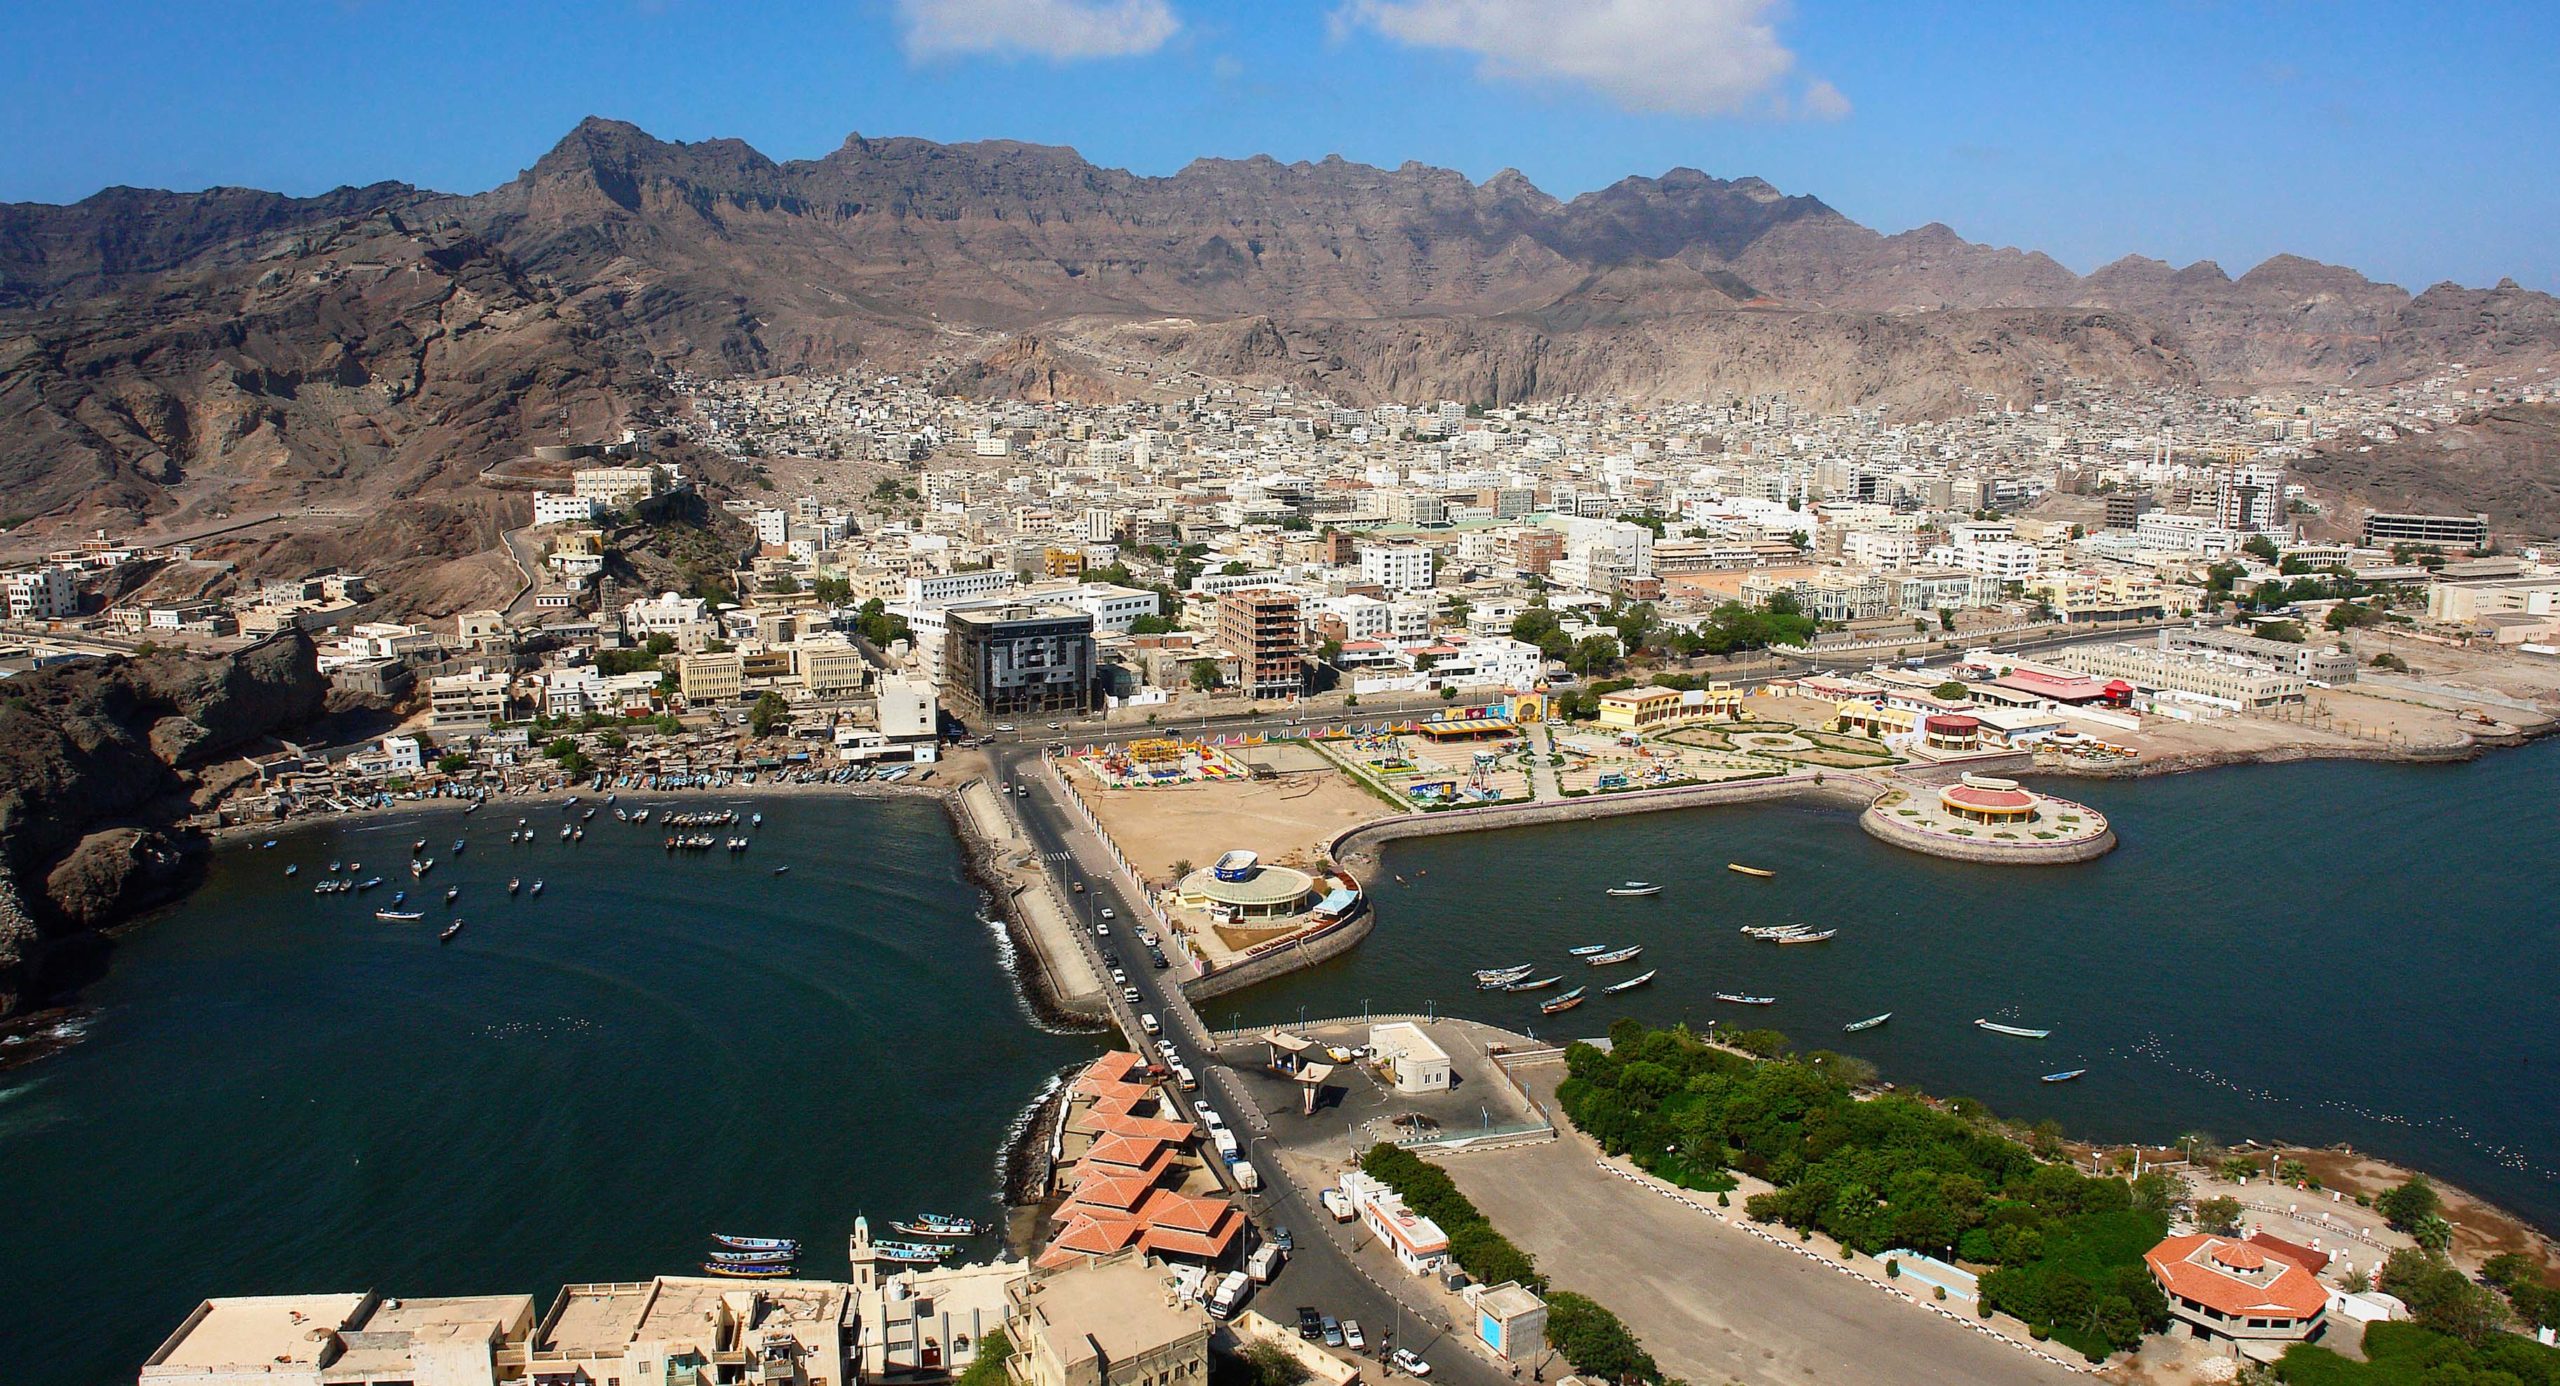 Aerial view of the city of Aden in Yemen